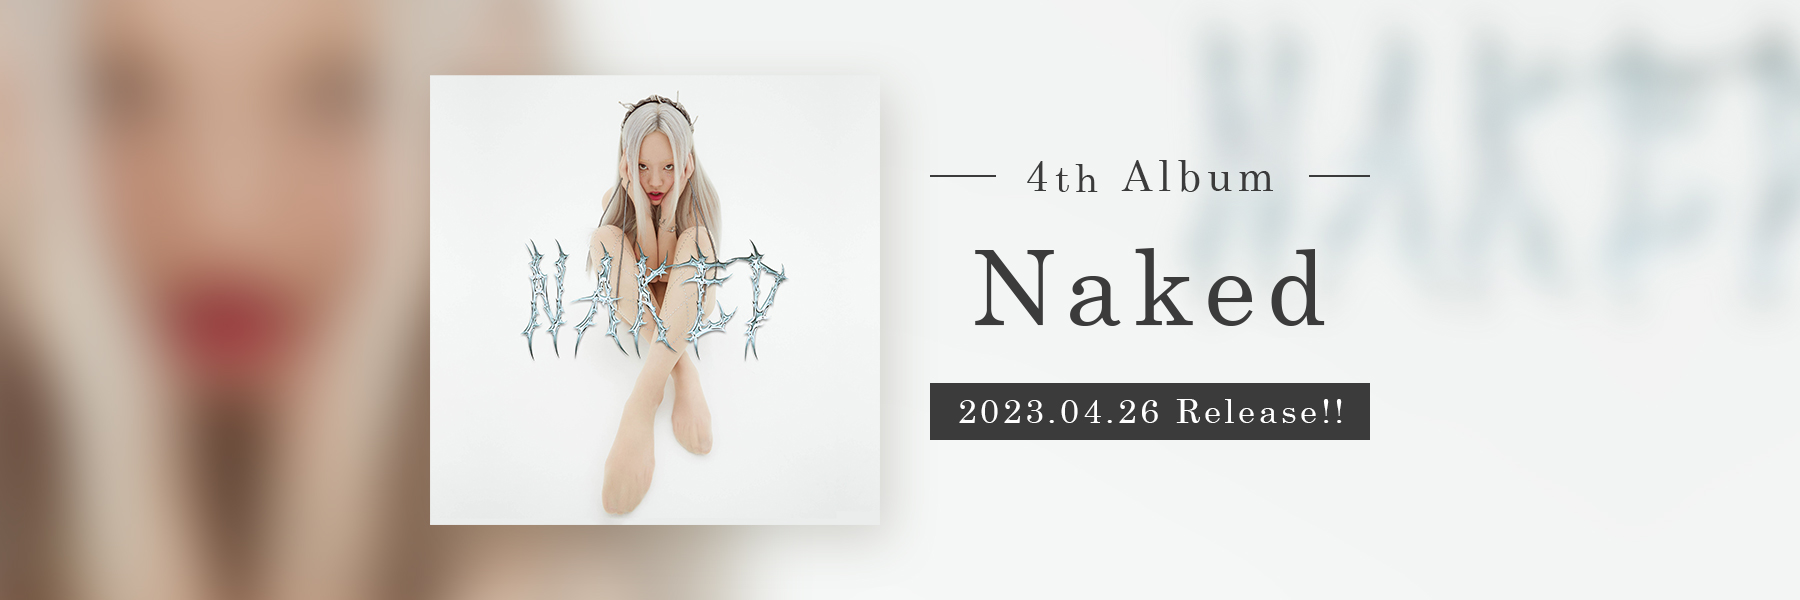 4th Album「Naked」